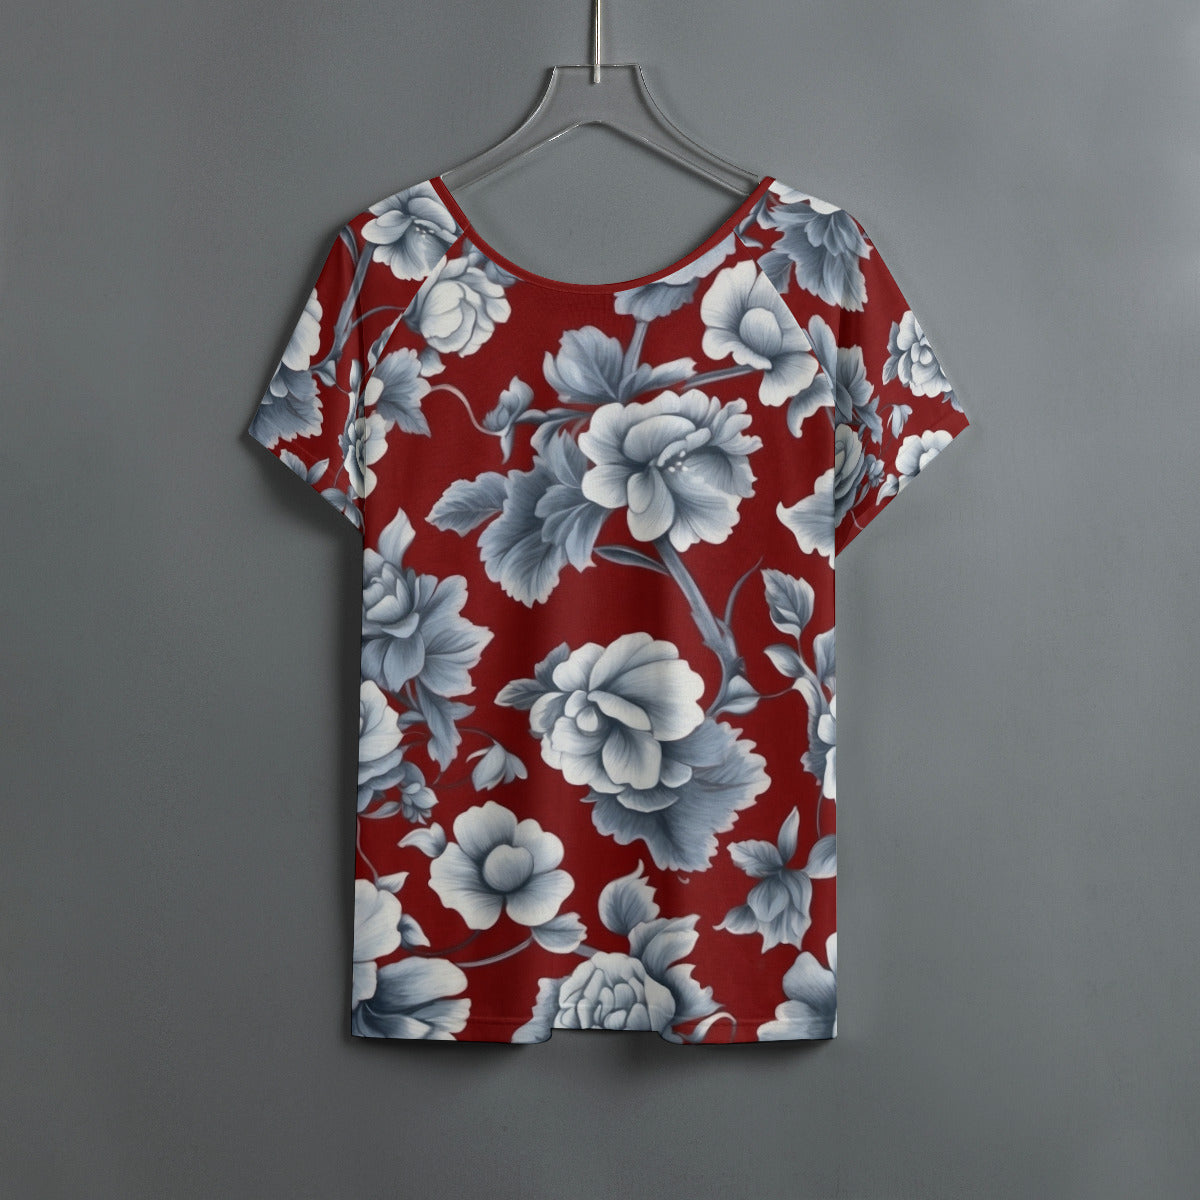 Pattern 197 -- Women's Round Neck T-shirt With Raglan Sleeve